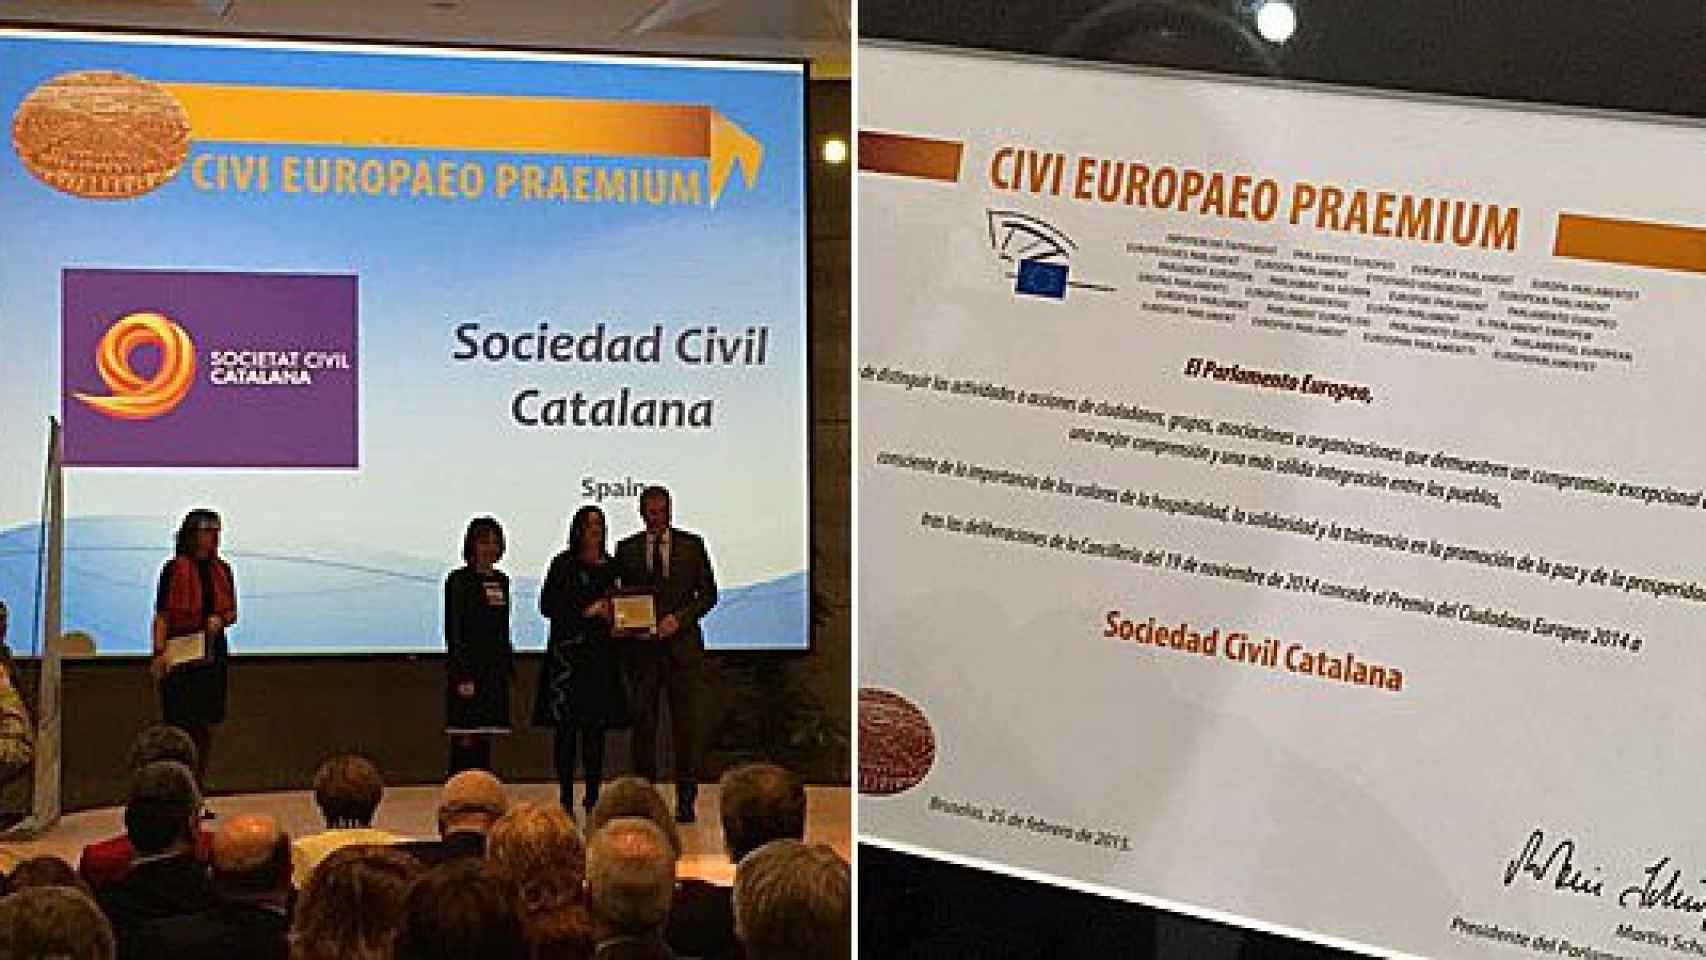 Representantes de SCC recogen en Bruselas el Premio Ciudadano Europeo 2014 concedido por el Parlamento Europeo